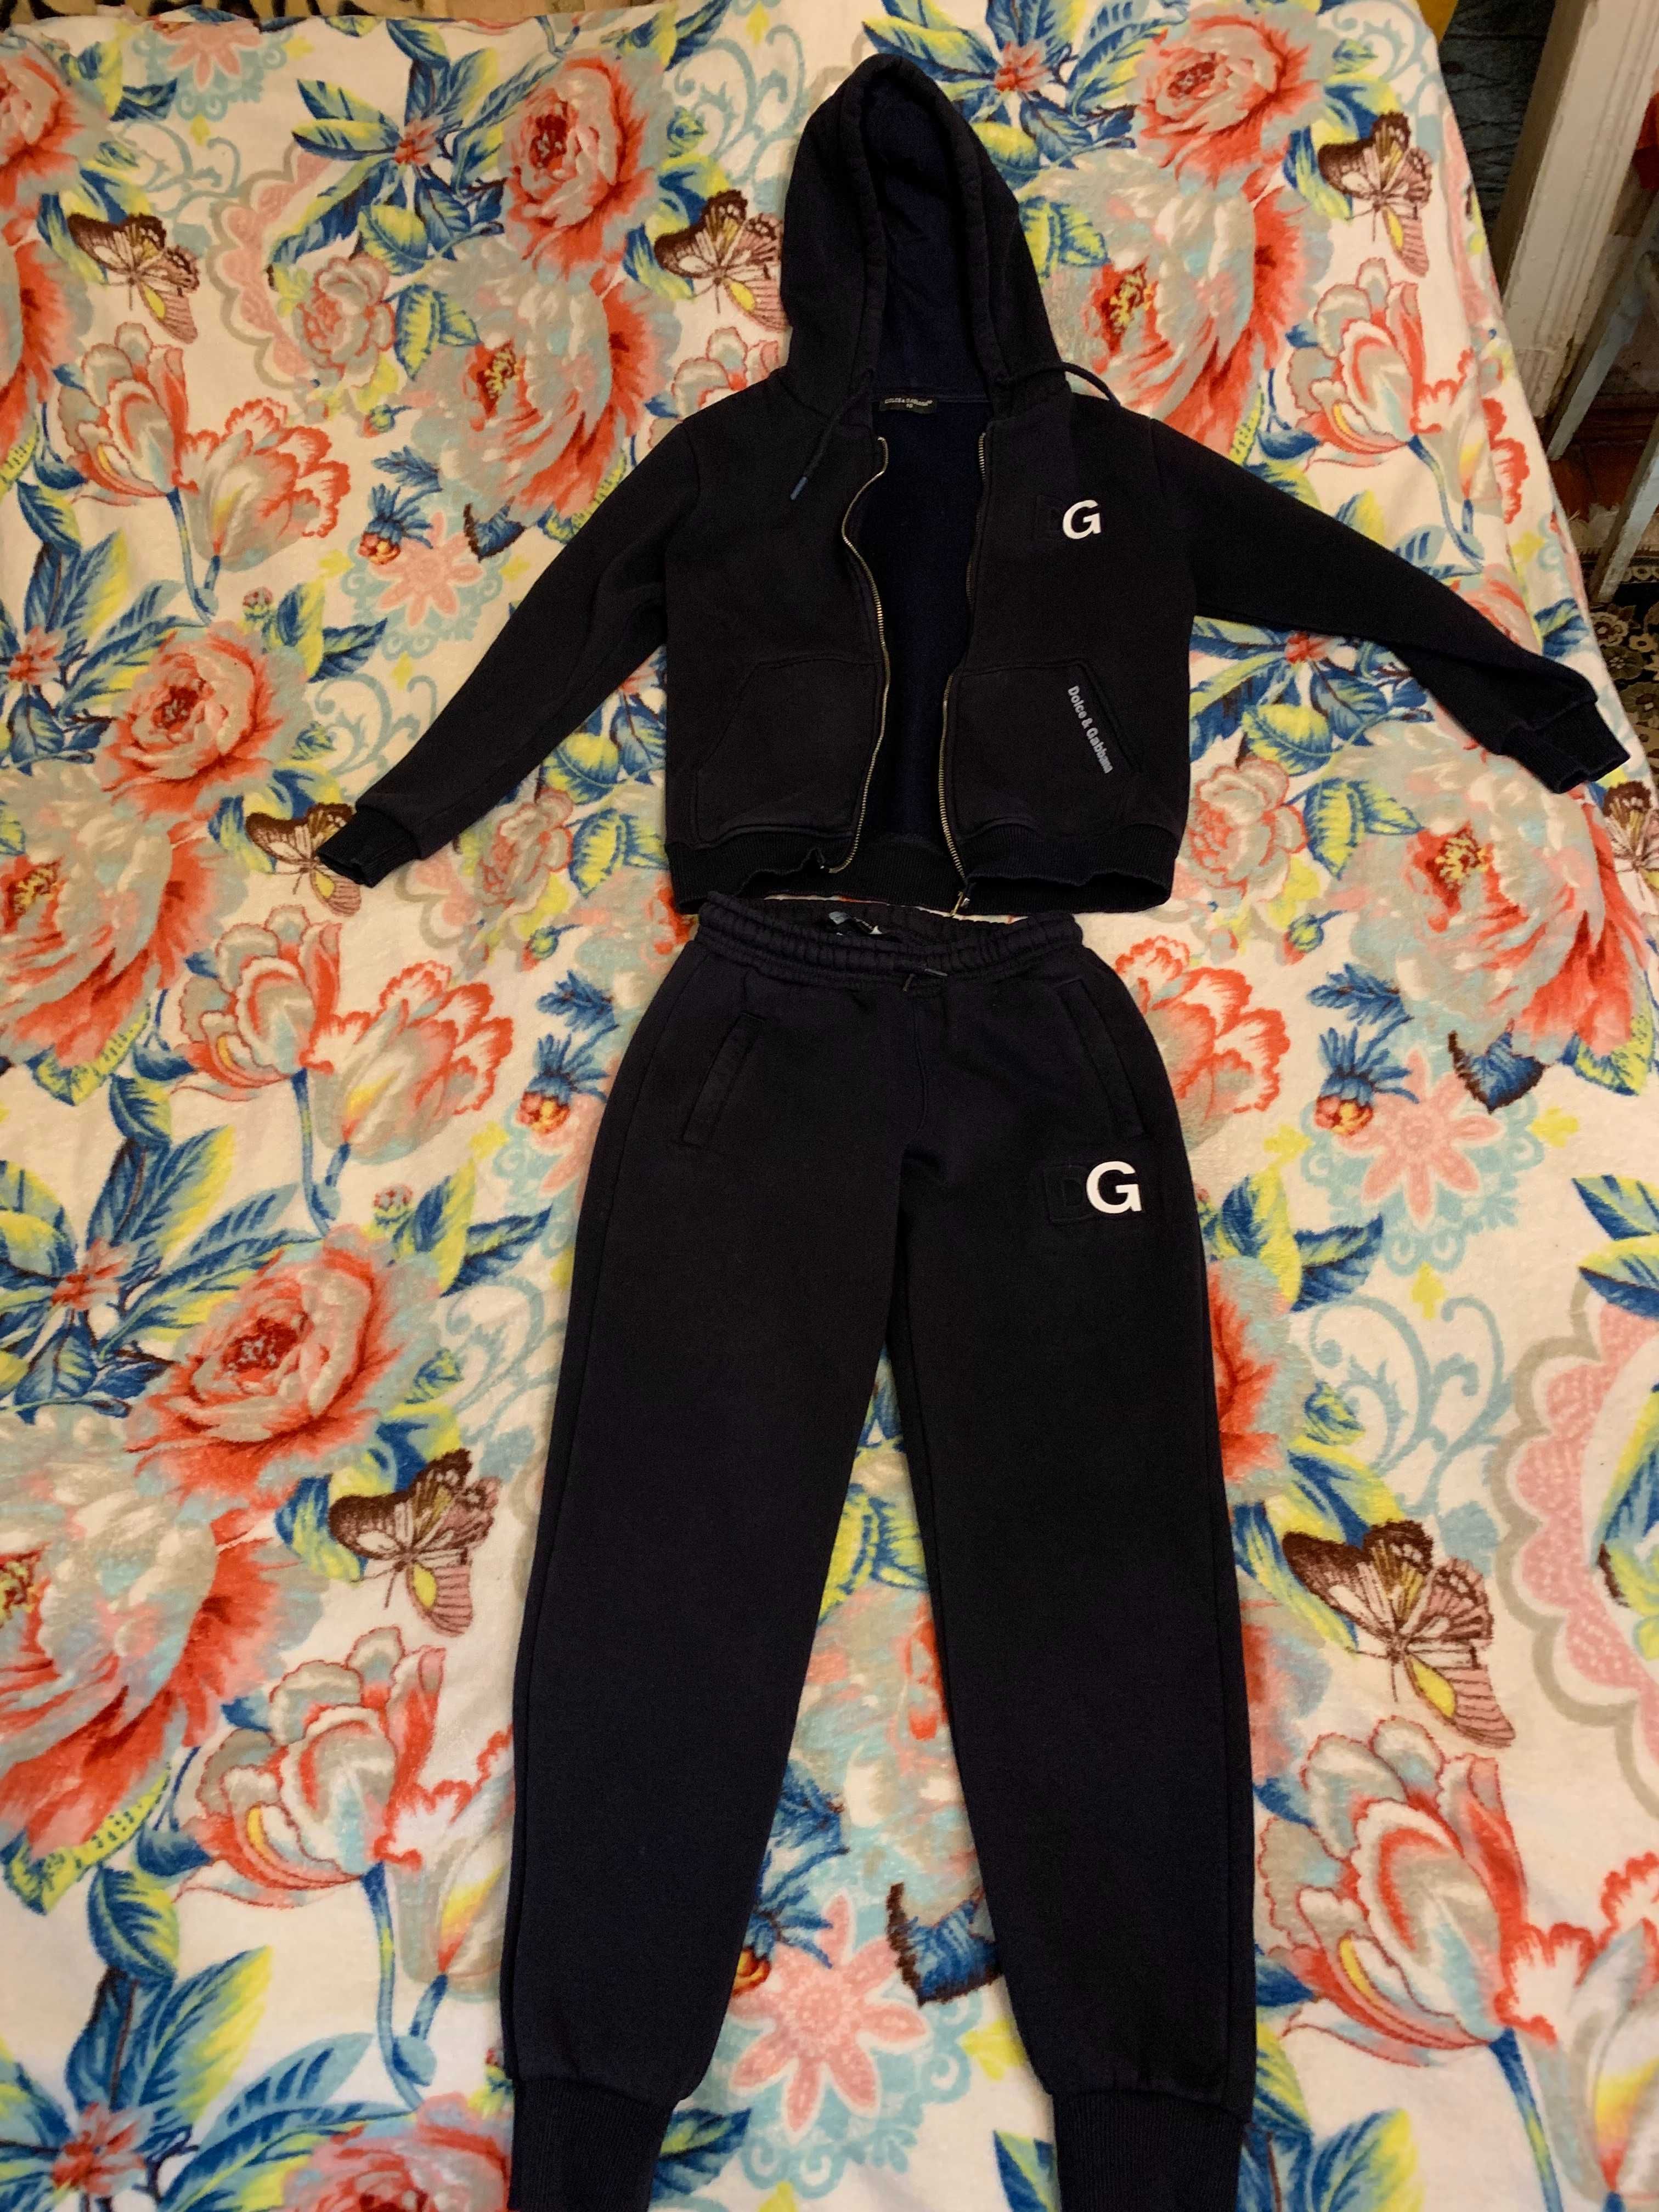 Детский утеплённый костюм, жилетка D&G и кроссовки Adidas.